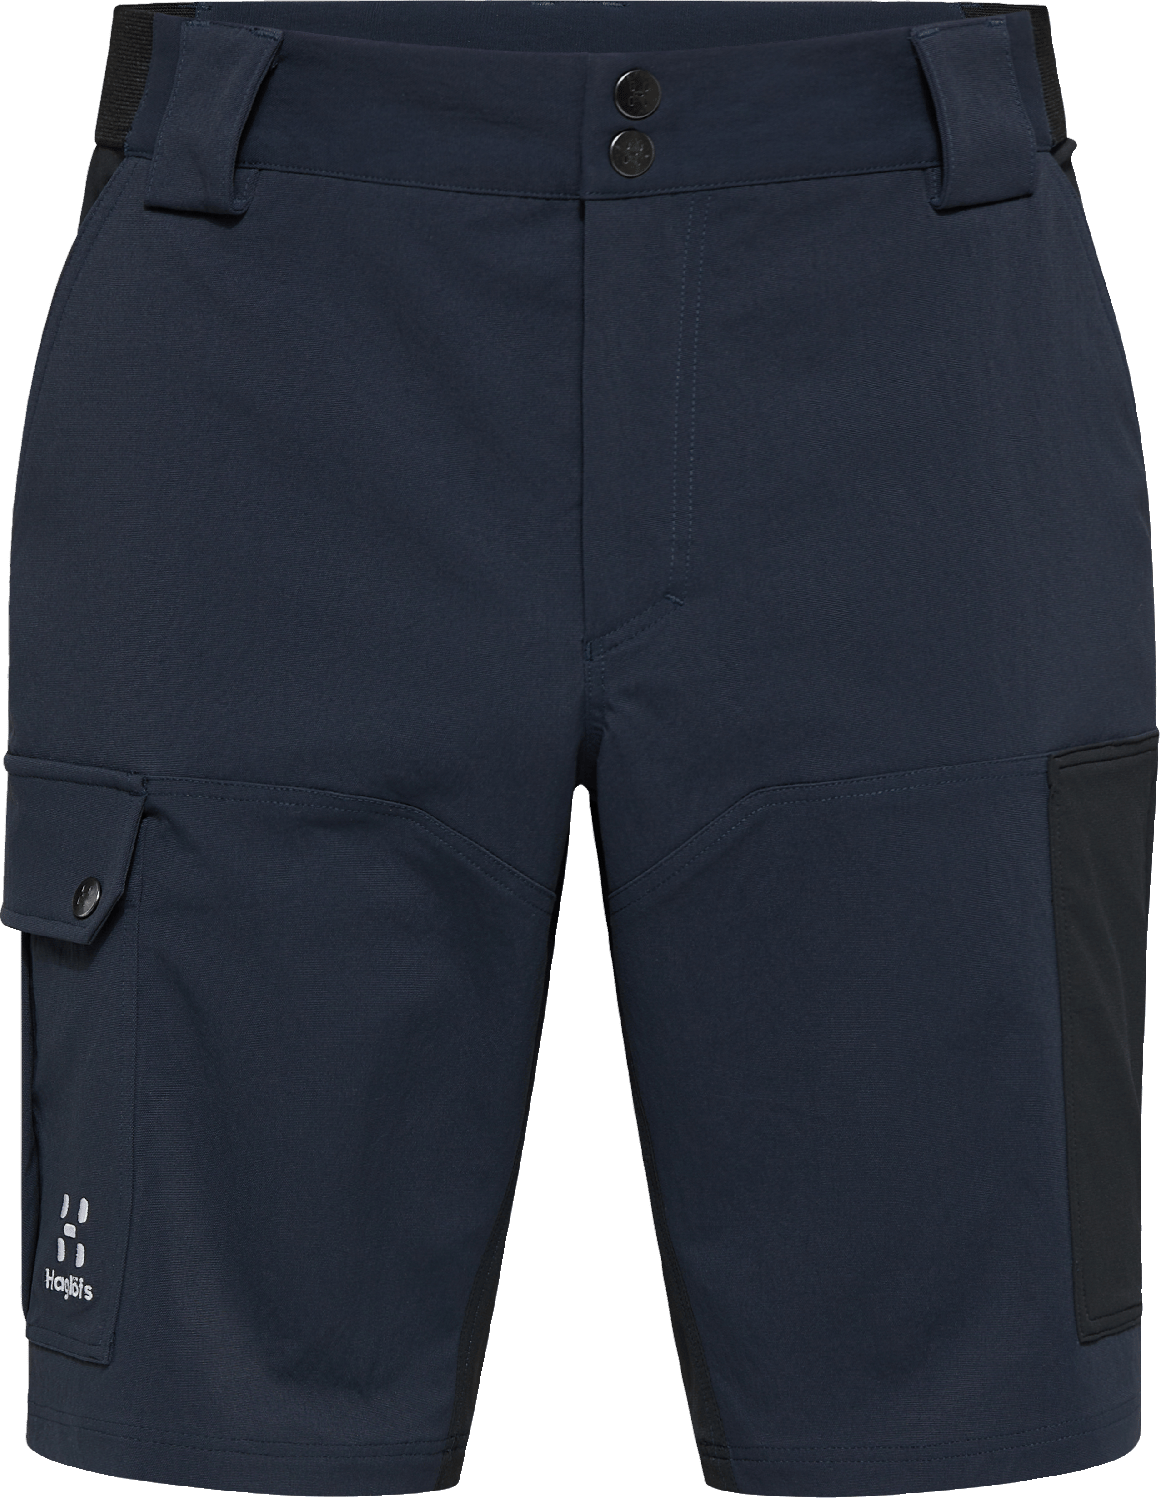 Men's Rugged Standard Shorts Tarn Blue/True Black